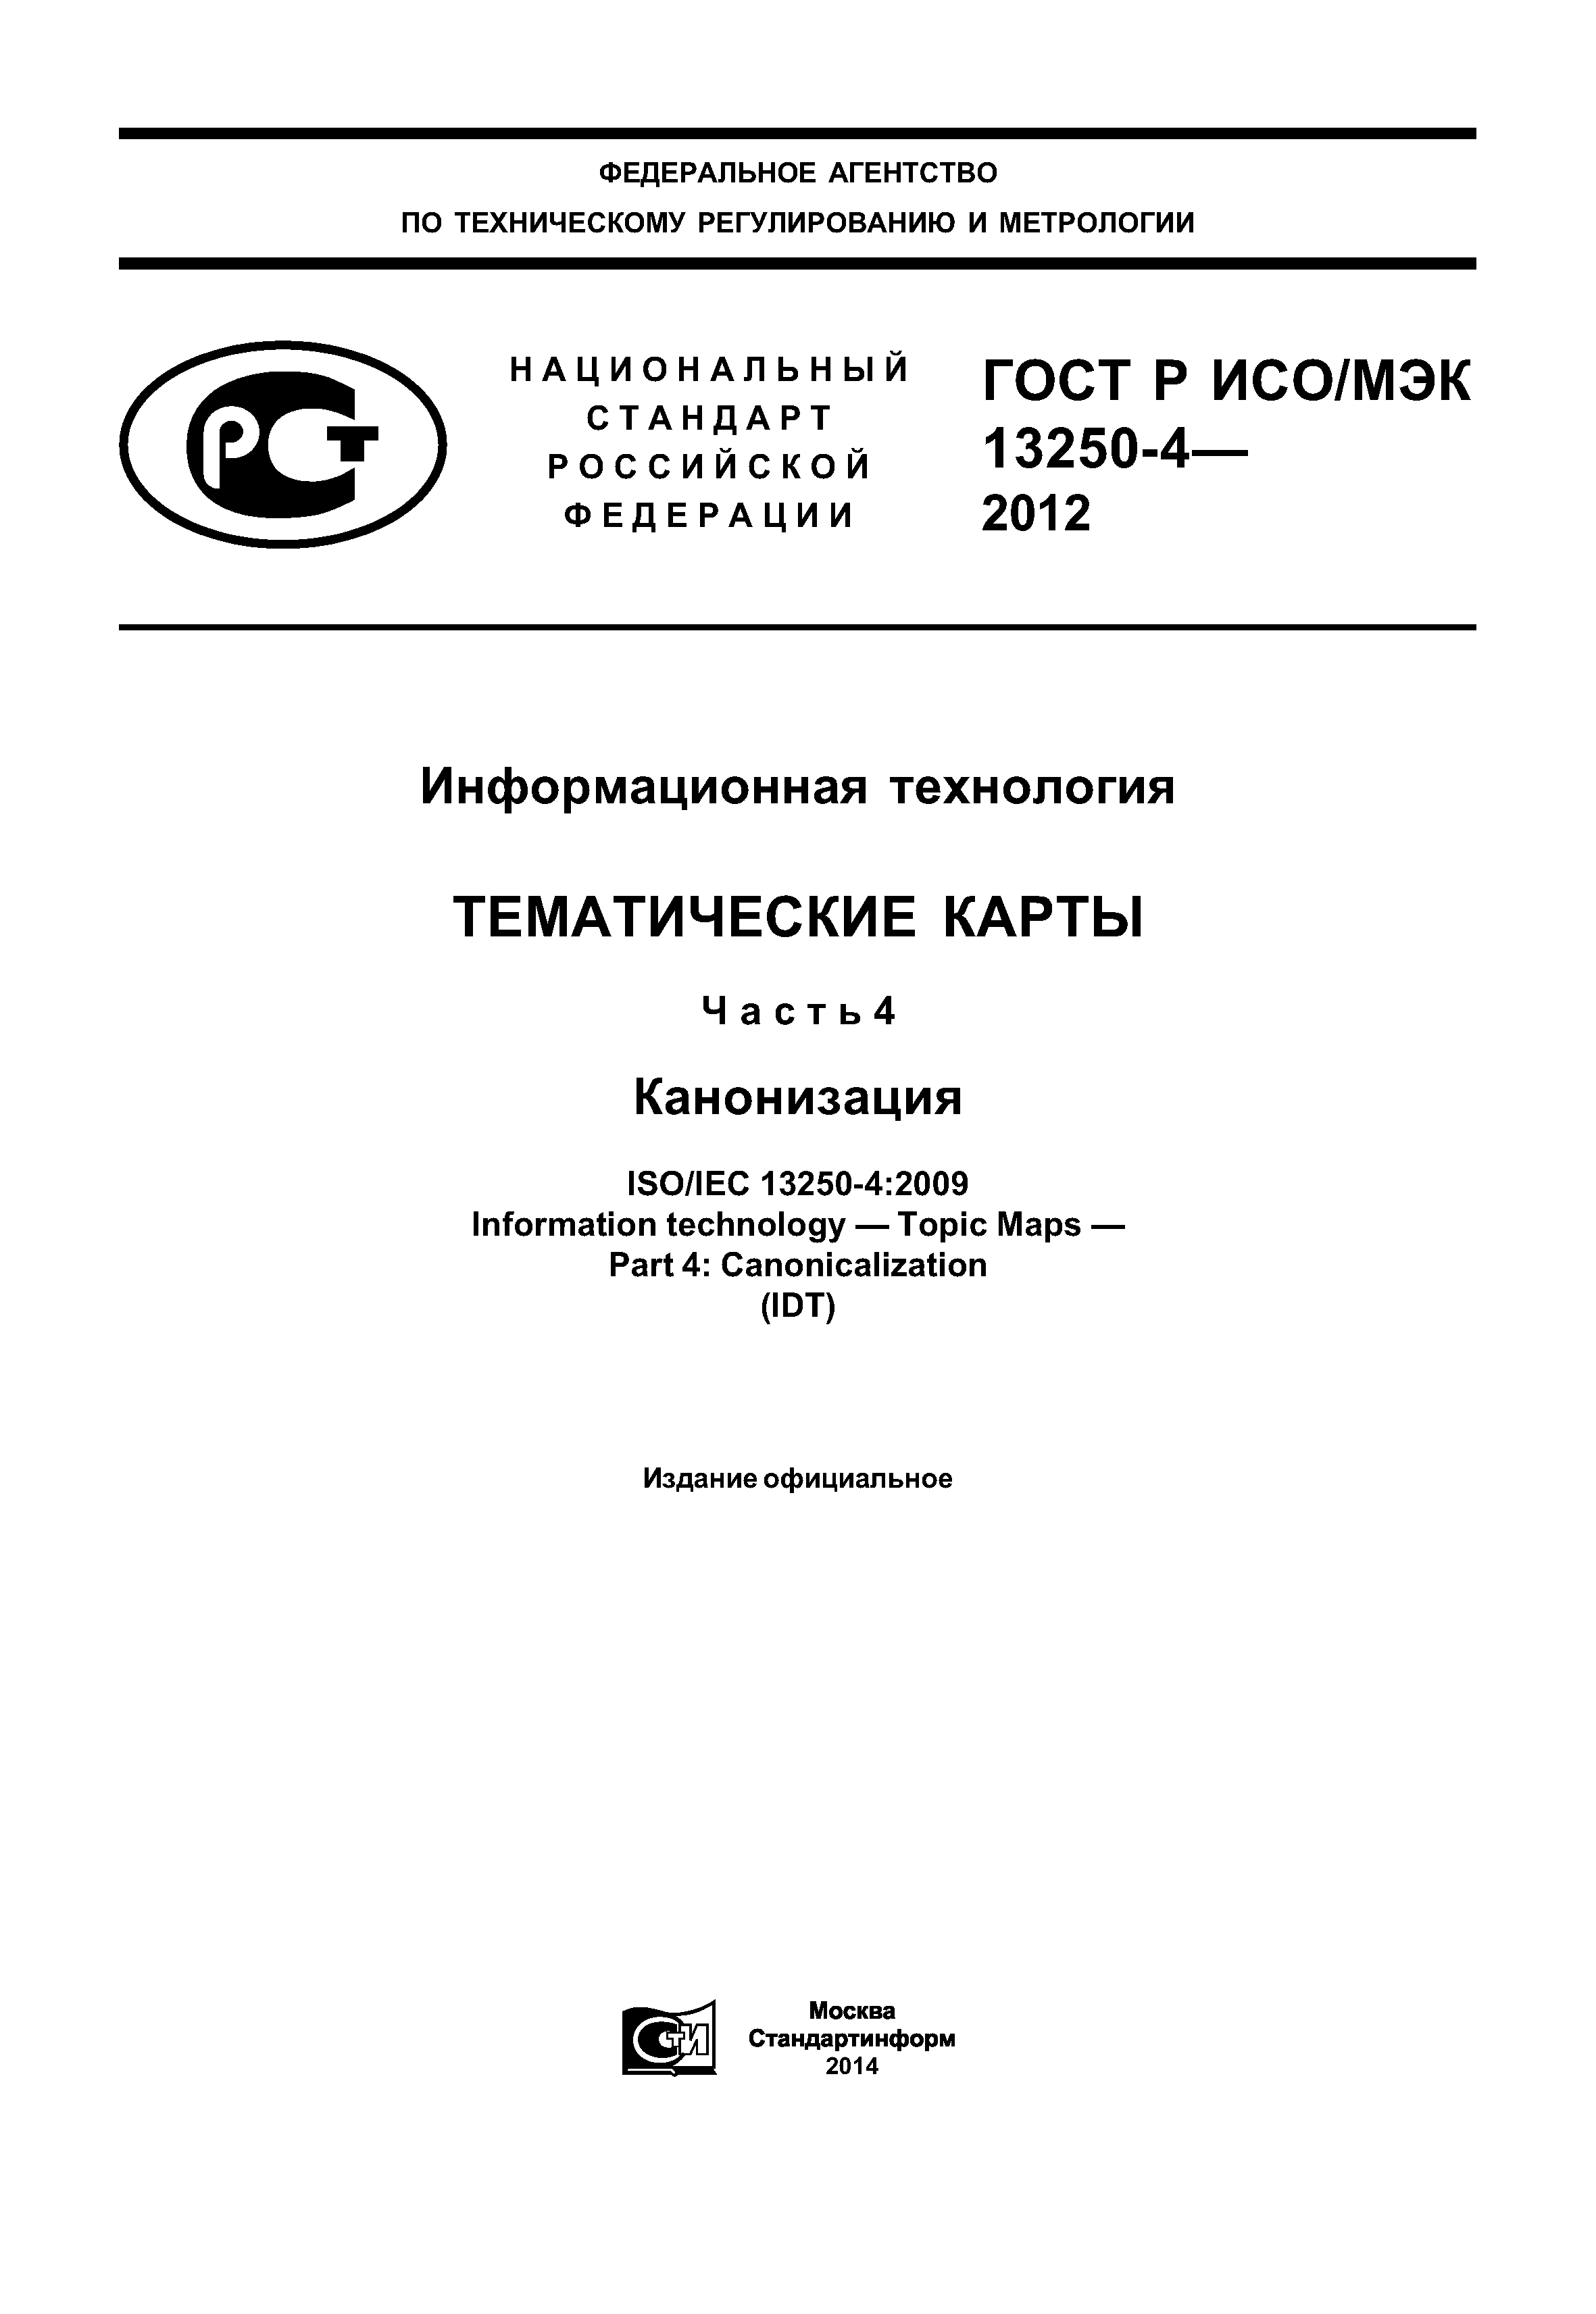 ГОСТ Р ИСО/МЭК 13250-4-2012